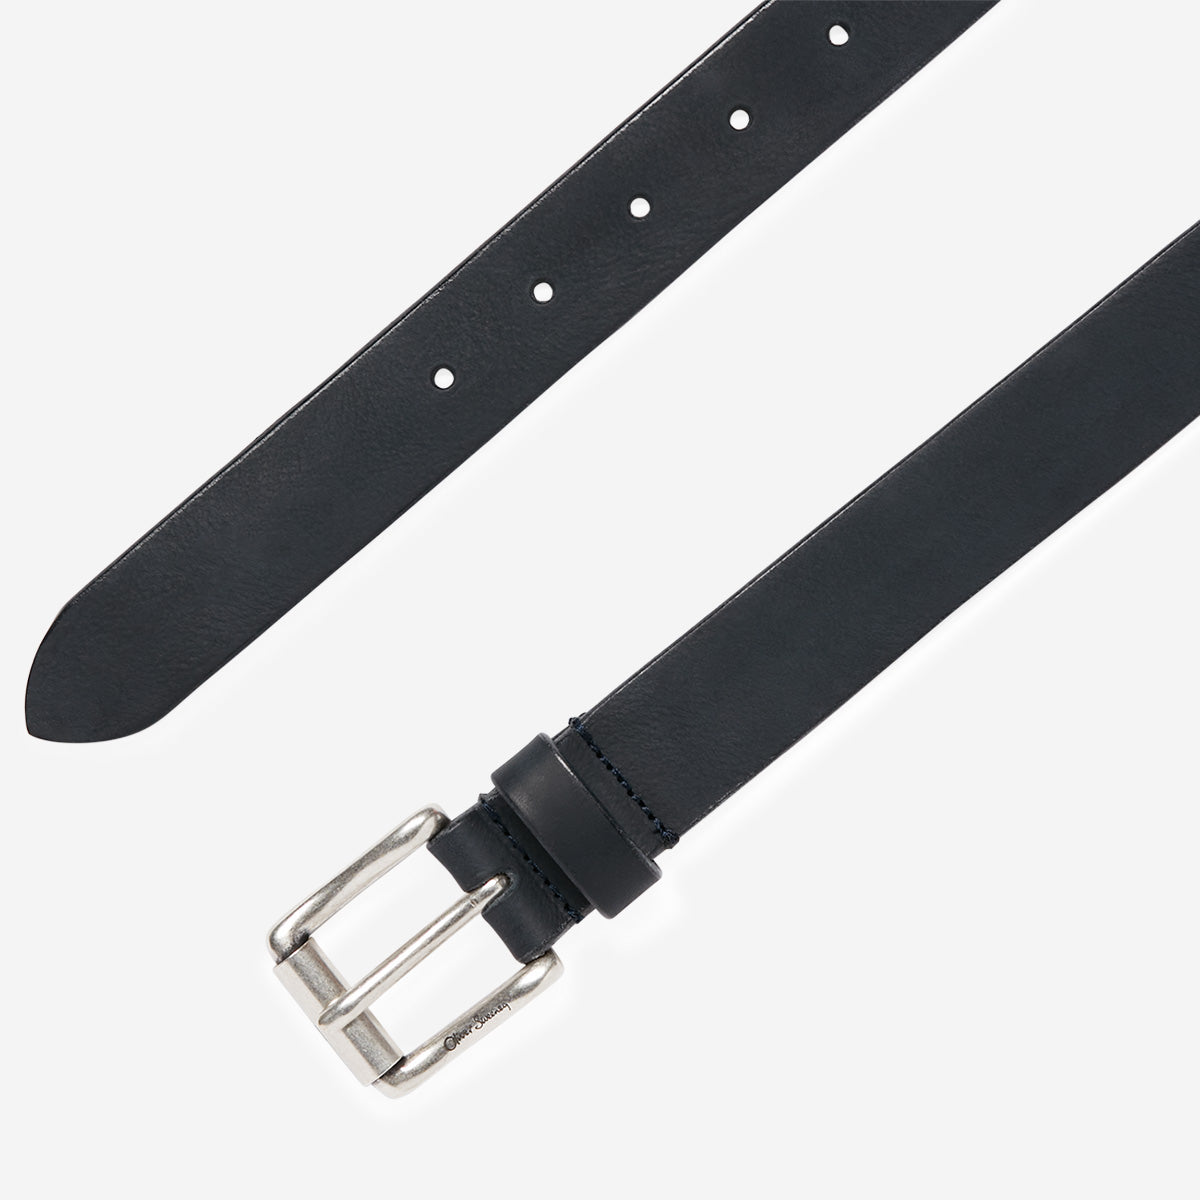 Marzanemi Navy | Leather Belt | Men's Belts | Oliver Sweeney